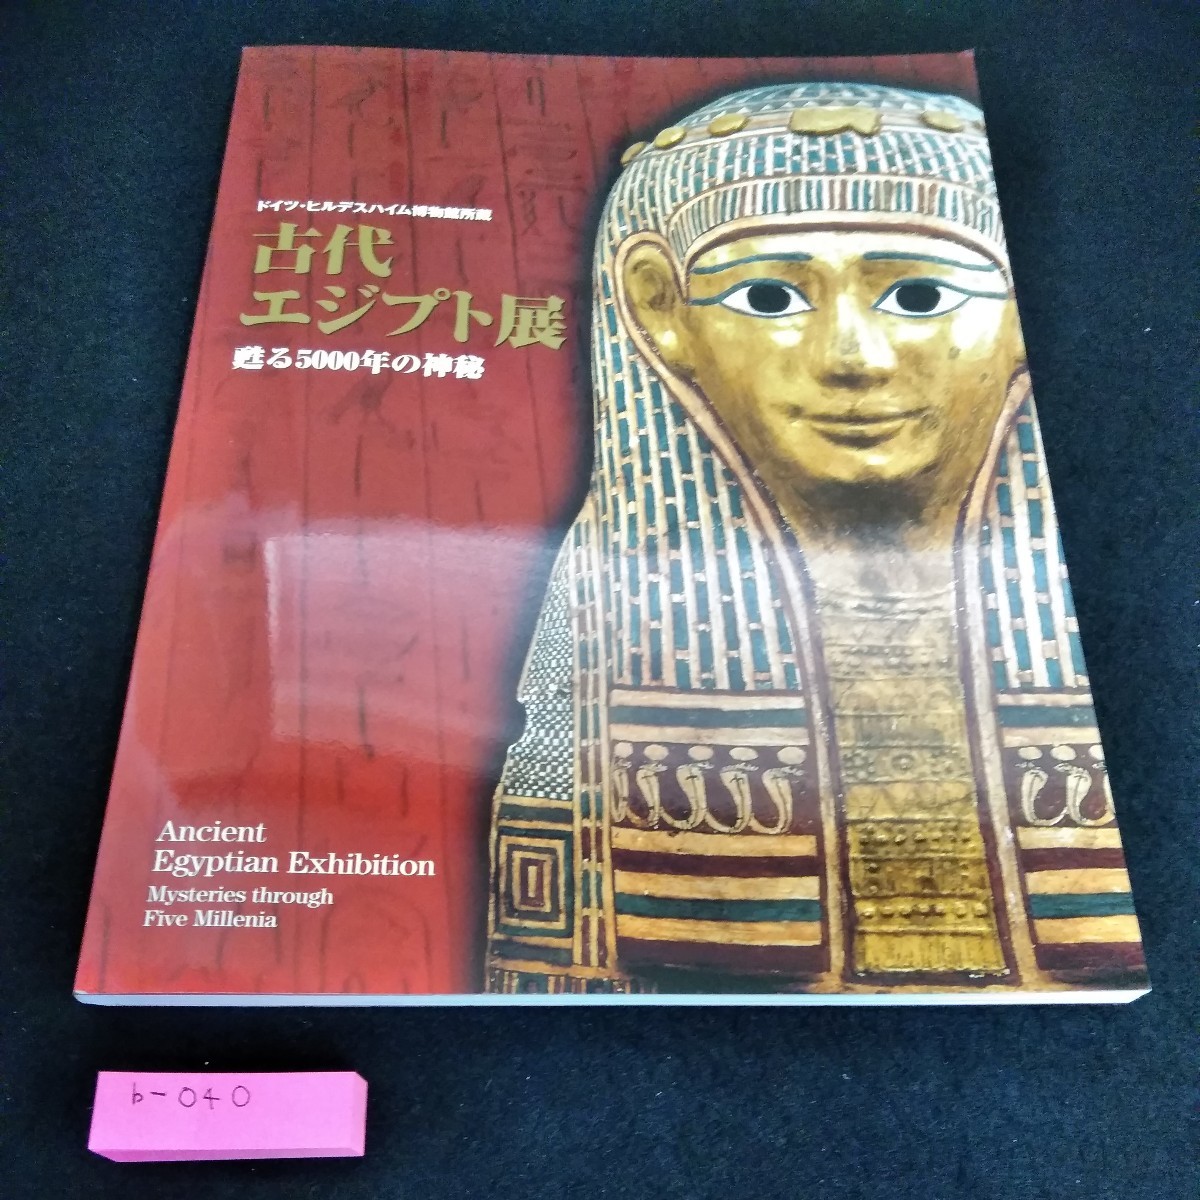 b-040 독일 힐데스하임 박물관 고대 이집트 전시: Reviving 5, 000년의 미스터리*6, 그림, 그림책, 수집, 목록